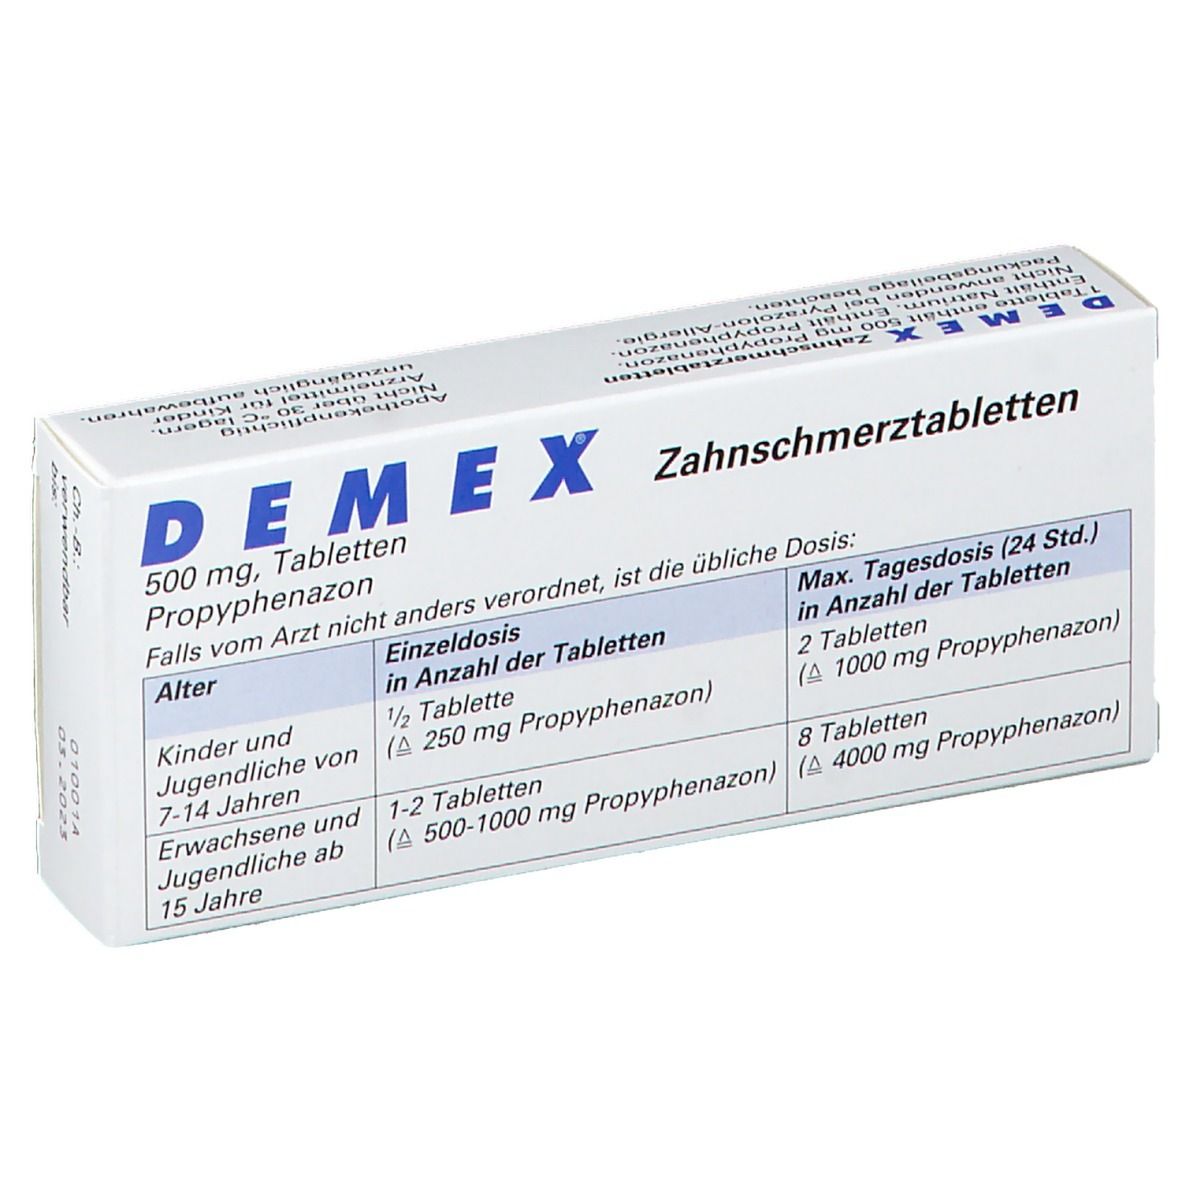 DEMEX® Zahnschmerztabletten